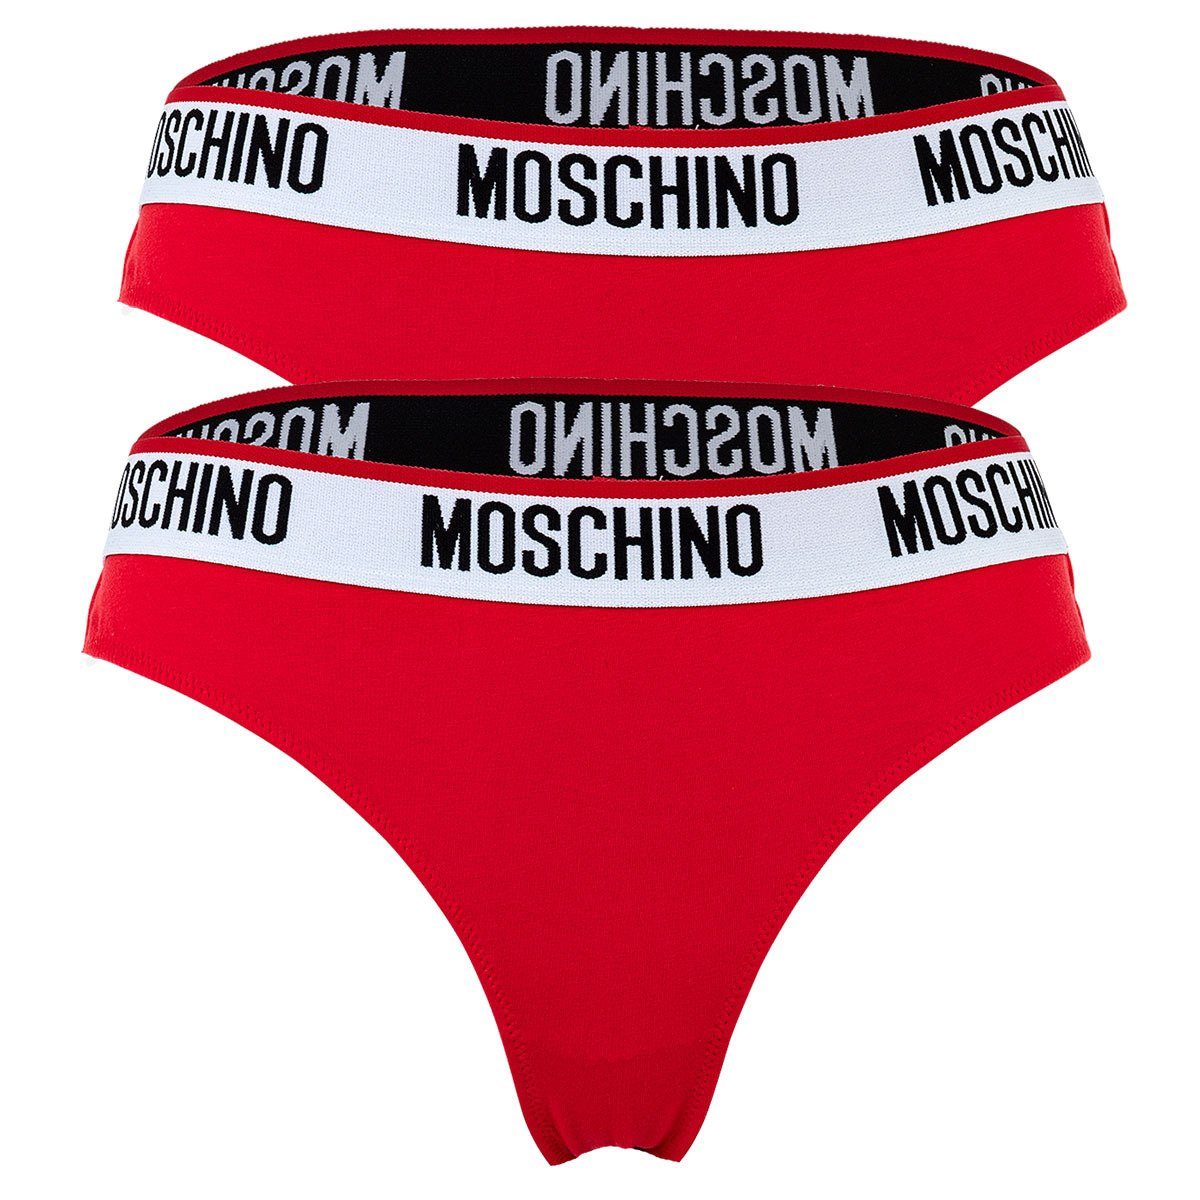 Moschino - Unterhose Pack Slip Damen Hipsters 2er Briefs, Rot